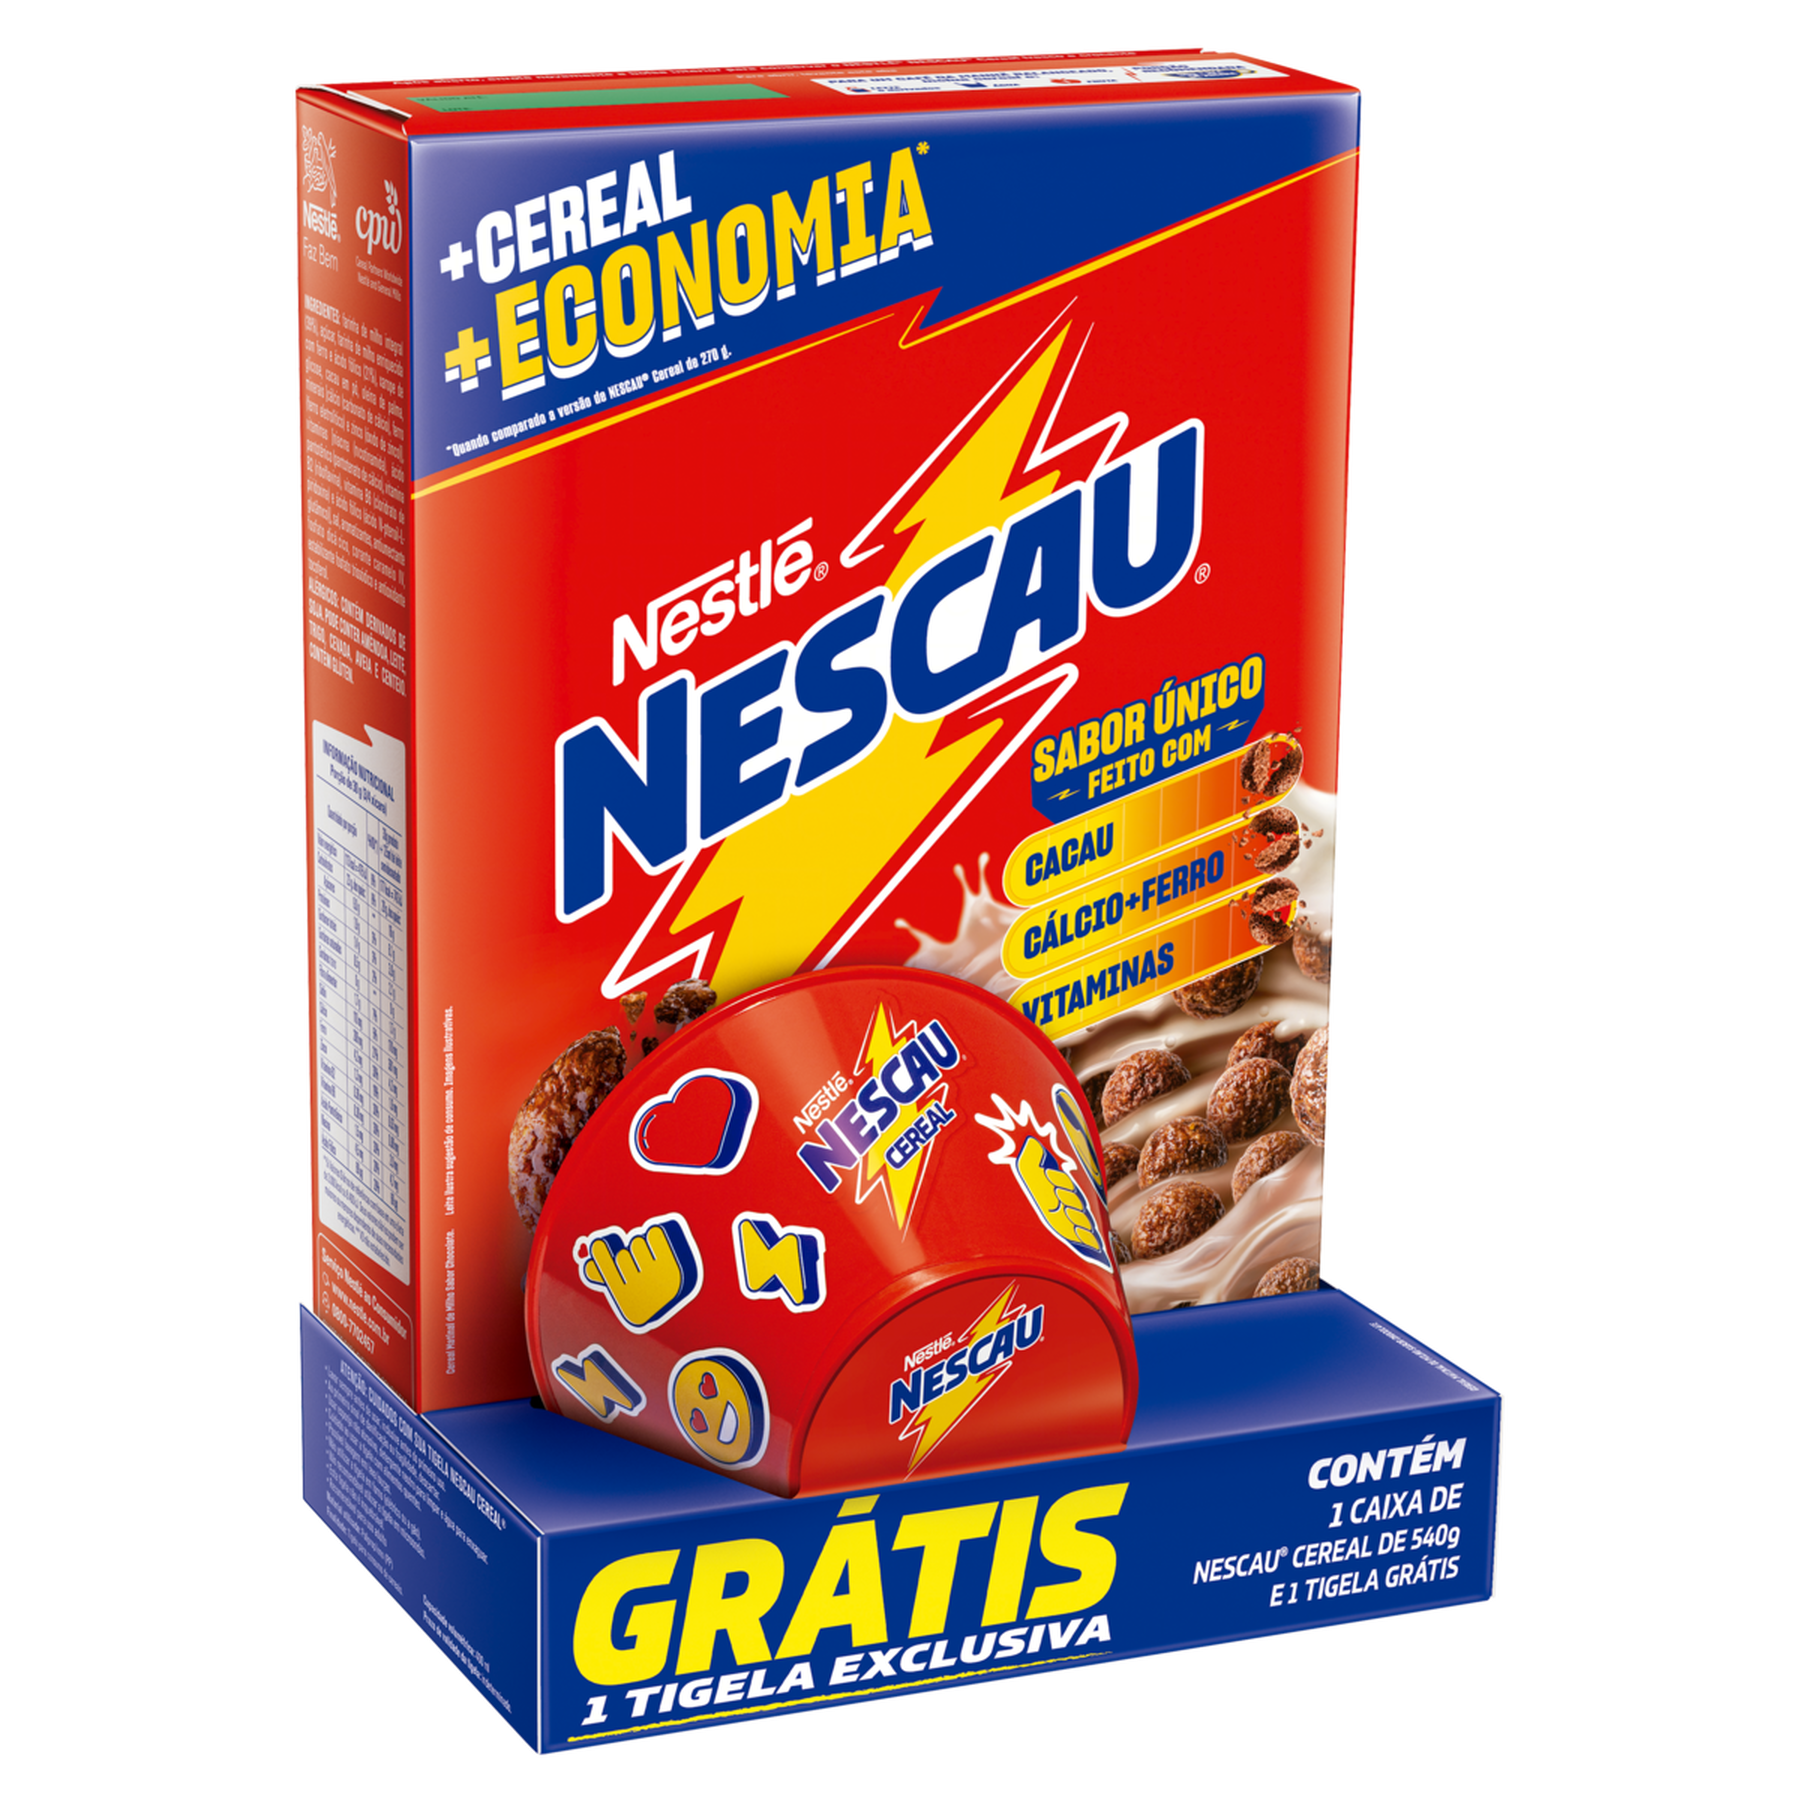 Cereal Matinal Chocolate Nescau Nestlé 540g - Embalagem + Econômica e Grátis 1 Tigela Exclusiva